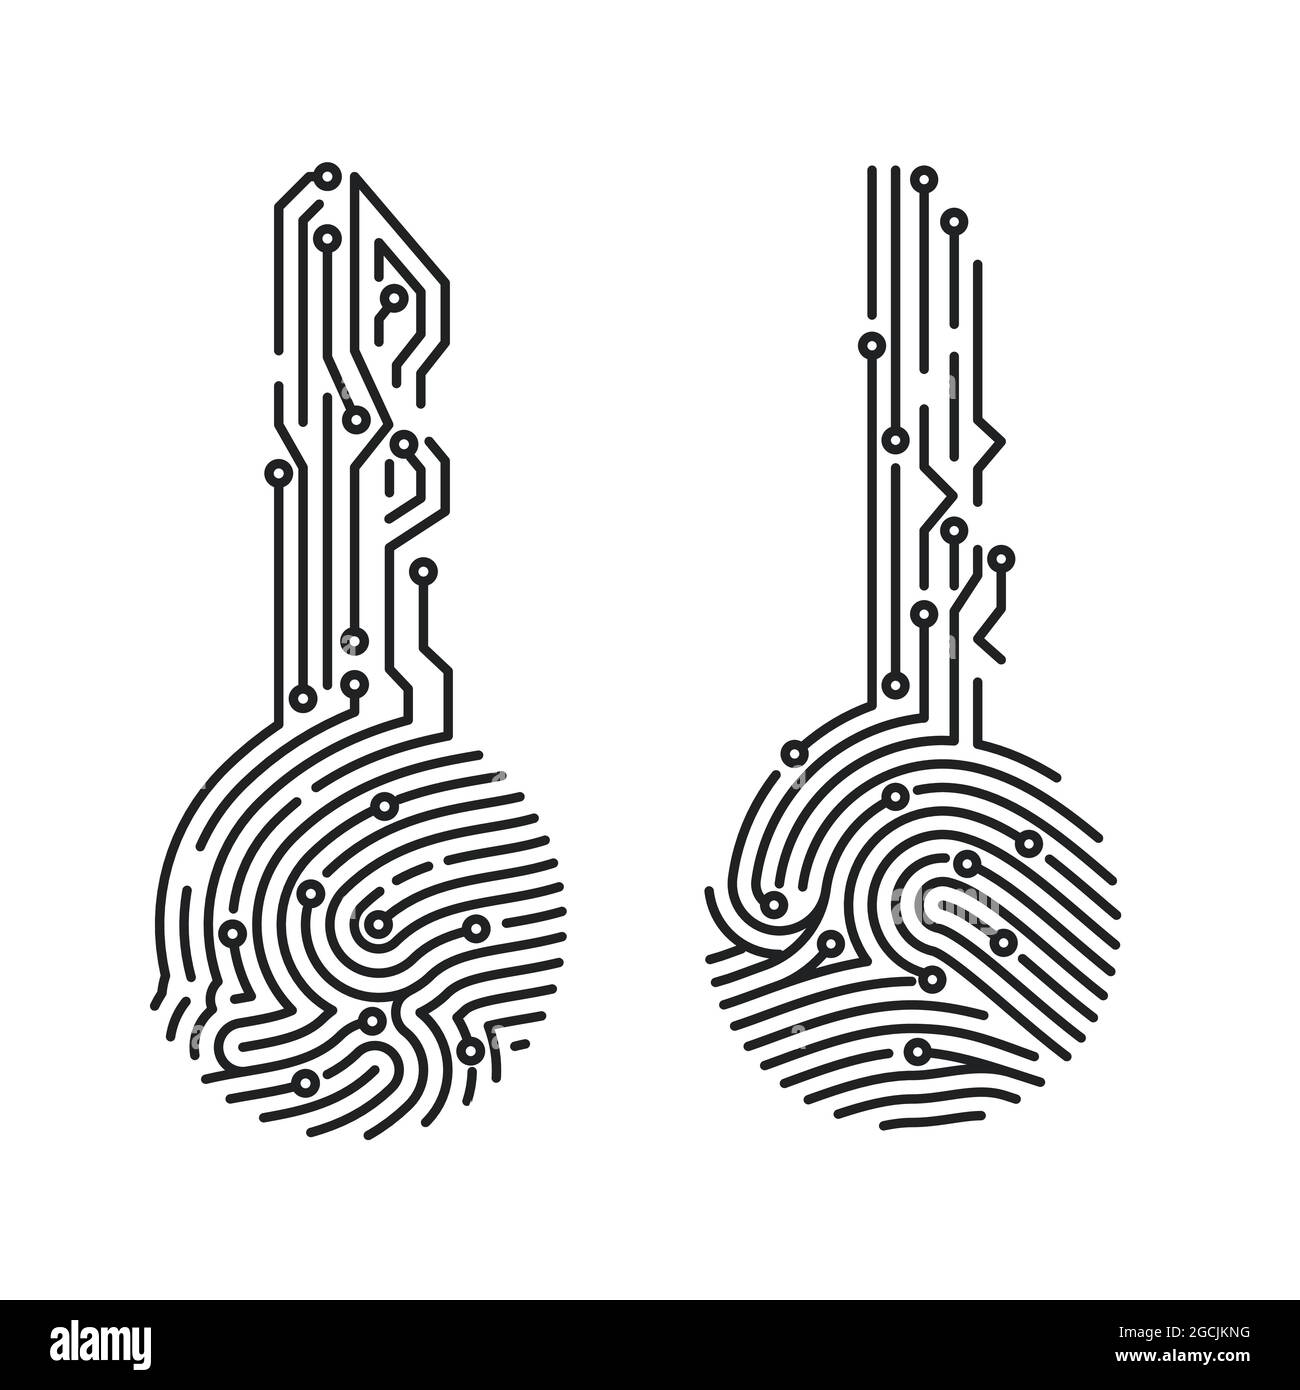 Fingerabdruckschlüssel für Schaltkreis. Benutzerüberprüfung des Sicherheitssystems. Biometrische ID für die Softwareanmeldung. Vektorgrafik Stock Vektor